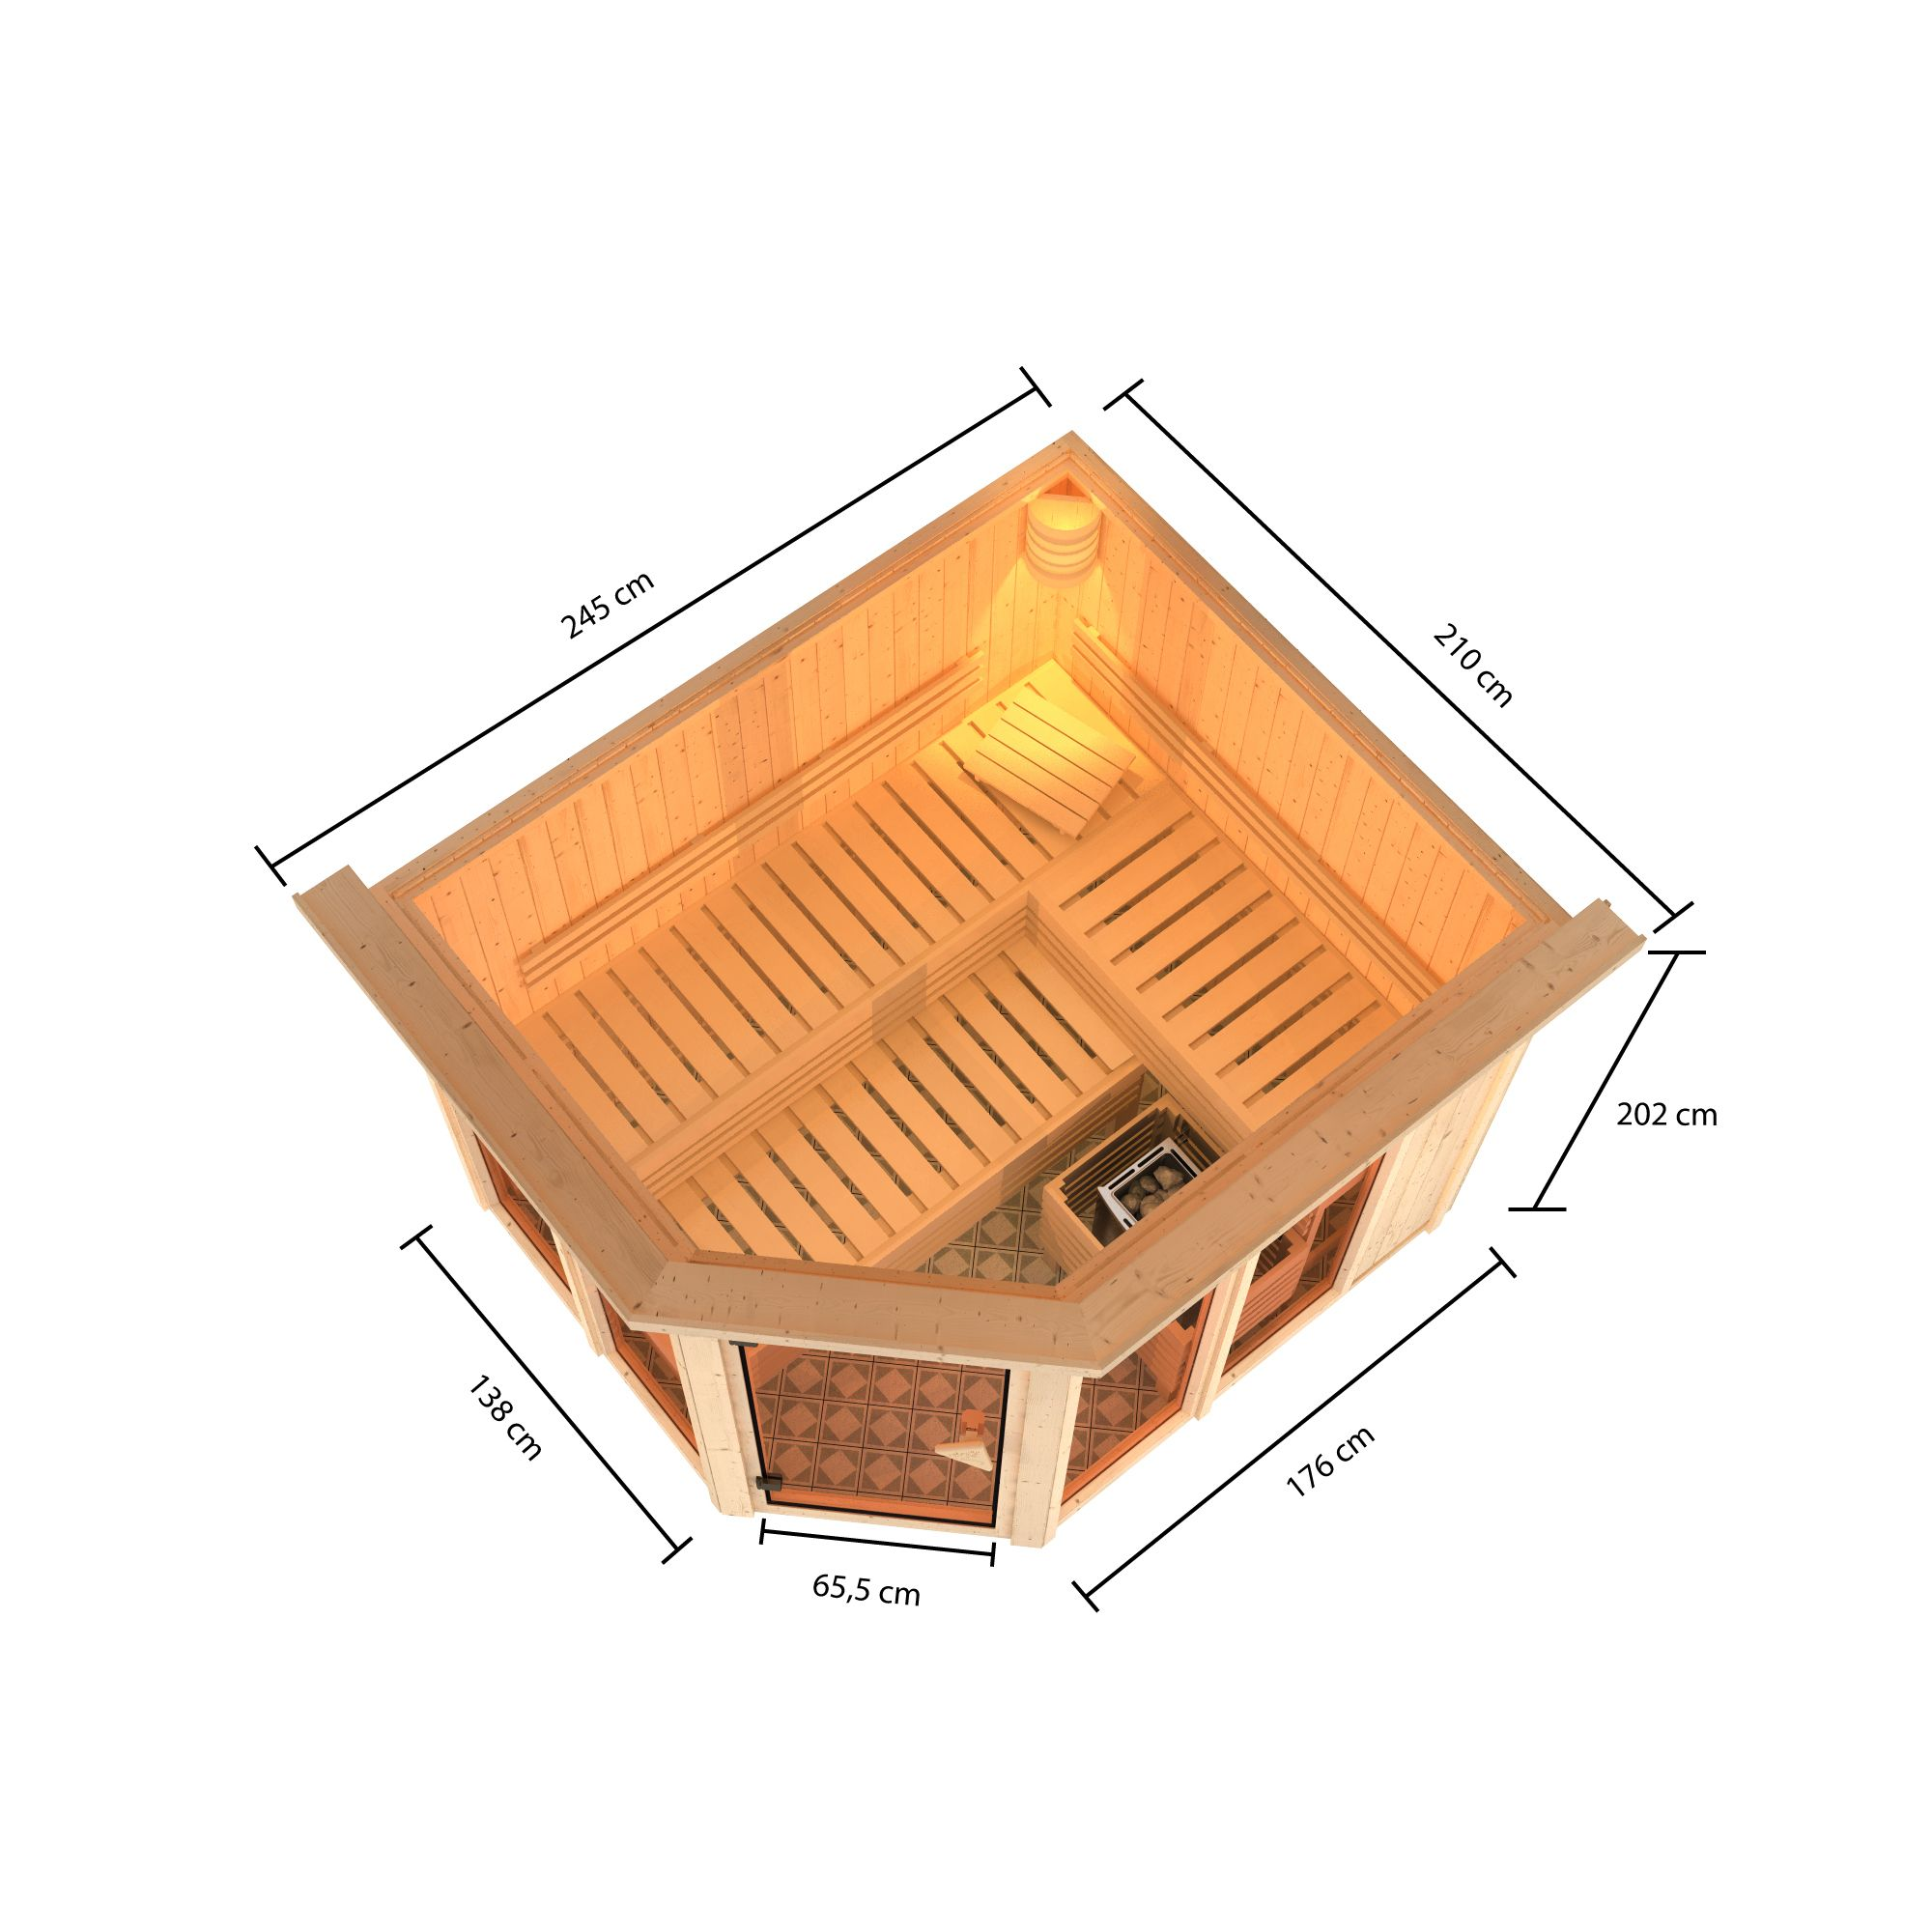 Sauna 'Ariadna 3' naturbelassen mit Kranz und bronzierter Tür 9 kW Bio-Ofen mit externe Steuerung 245 x 210 x 202 cm + product picture